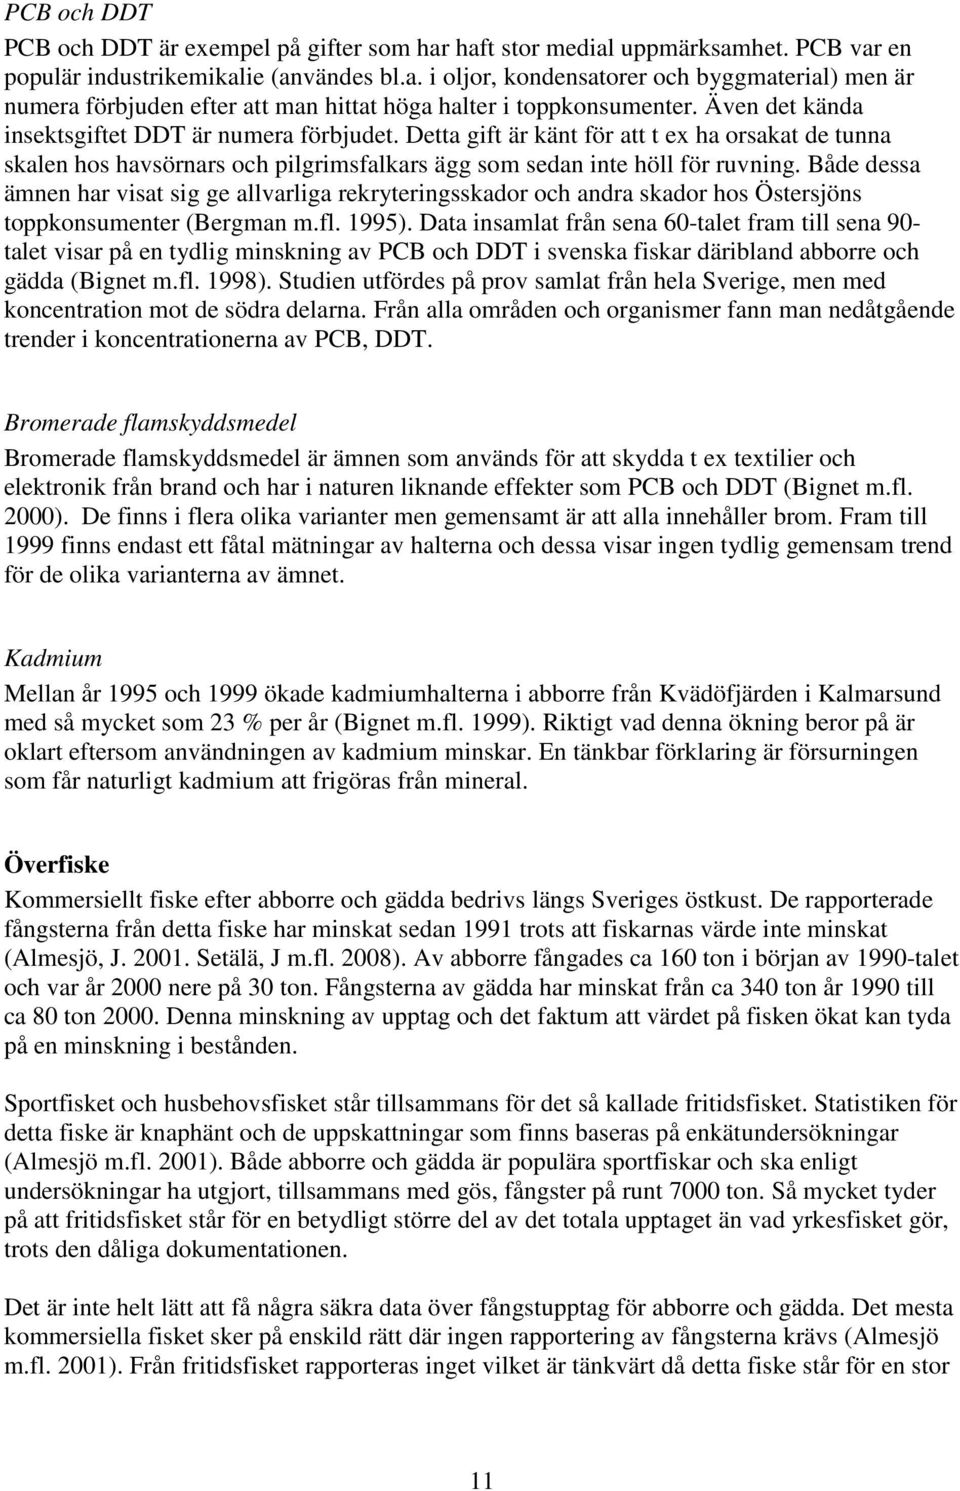 Både dessa ämnen har visat sig ge allvarliga rekryteringsskador och andra skador hos Östersjöns toppkonsumenter (Bergman m.fl. 1995).